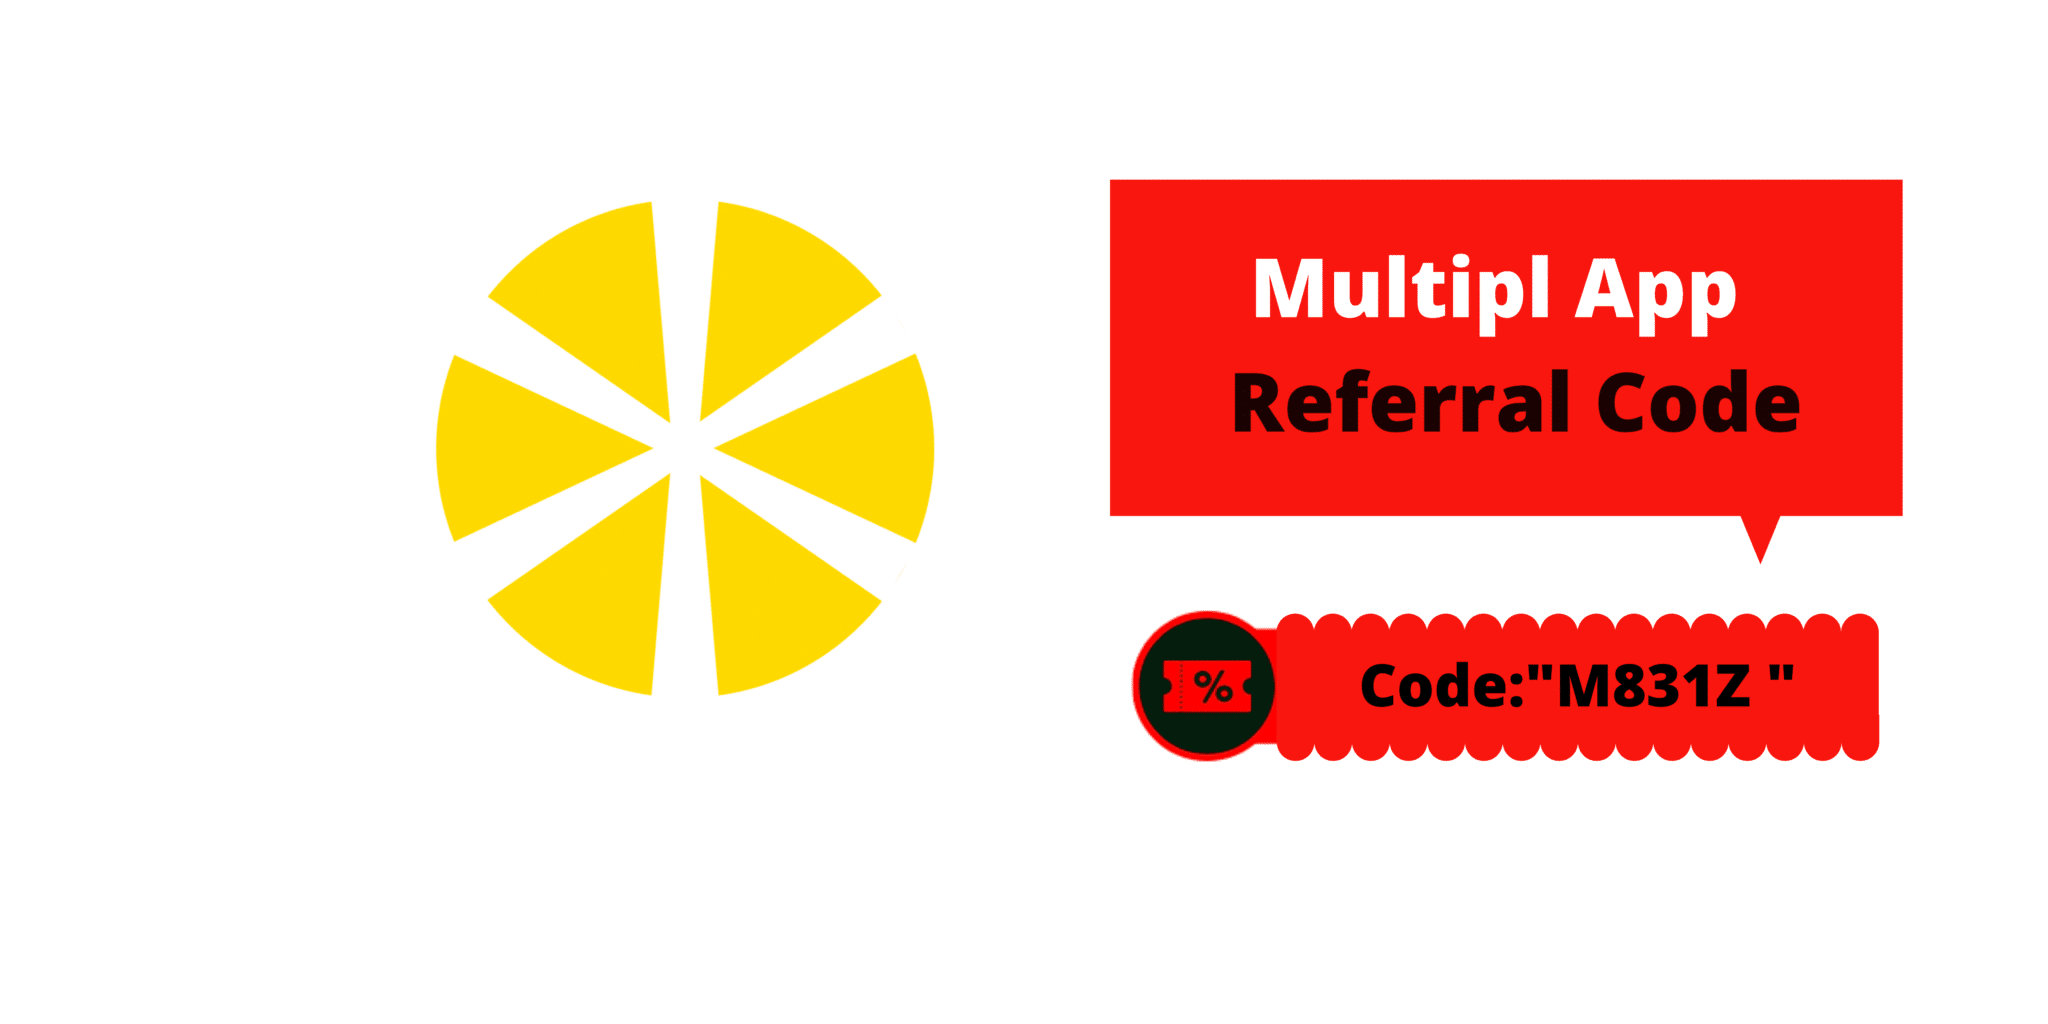 Multipl App Referral Code